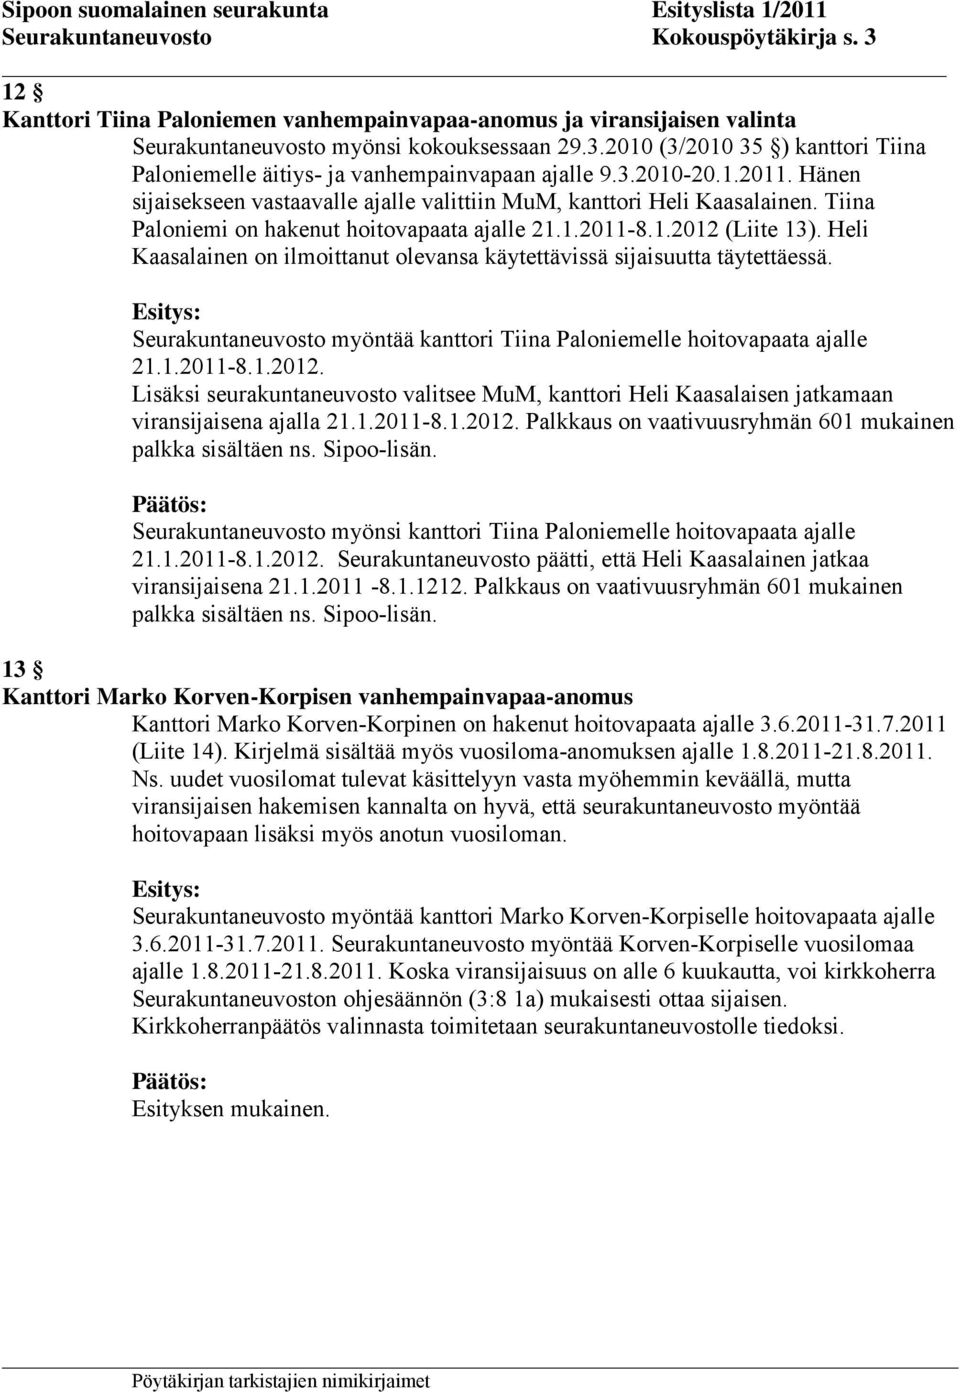 Heli Kaasalainen on ilmoittanut olevansa käytettävissä sijaisuutta täytettäessä. Seurakuntaneuvosto myöntää kanttori Tiina Paloniemelle hoitovapaata ajalle 21.1.2011-8.1.2012.